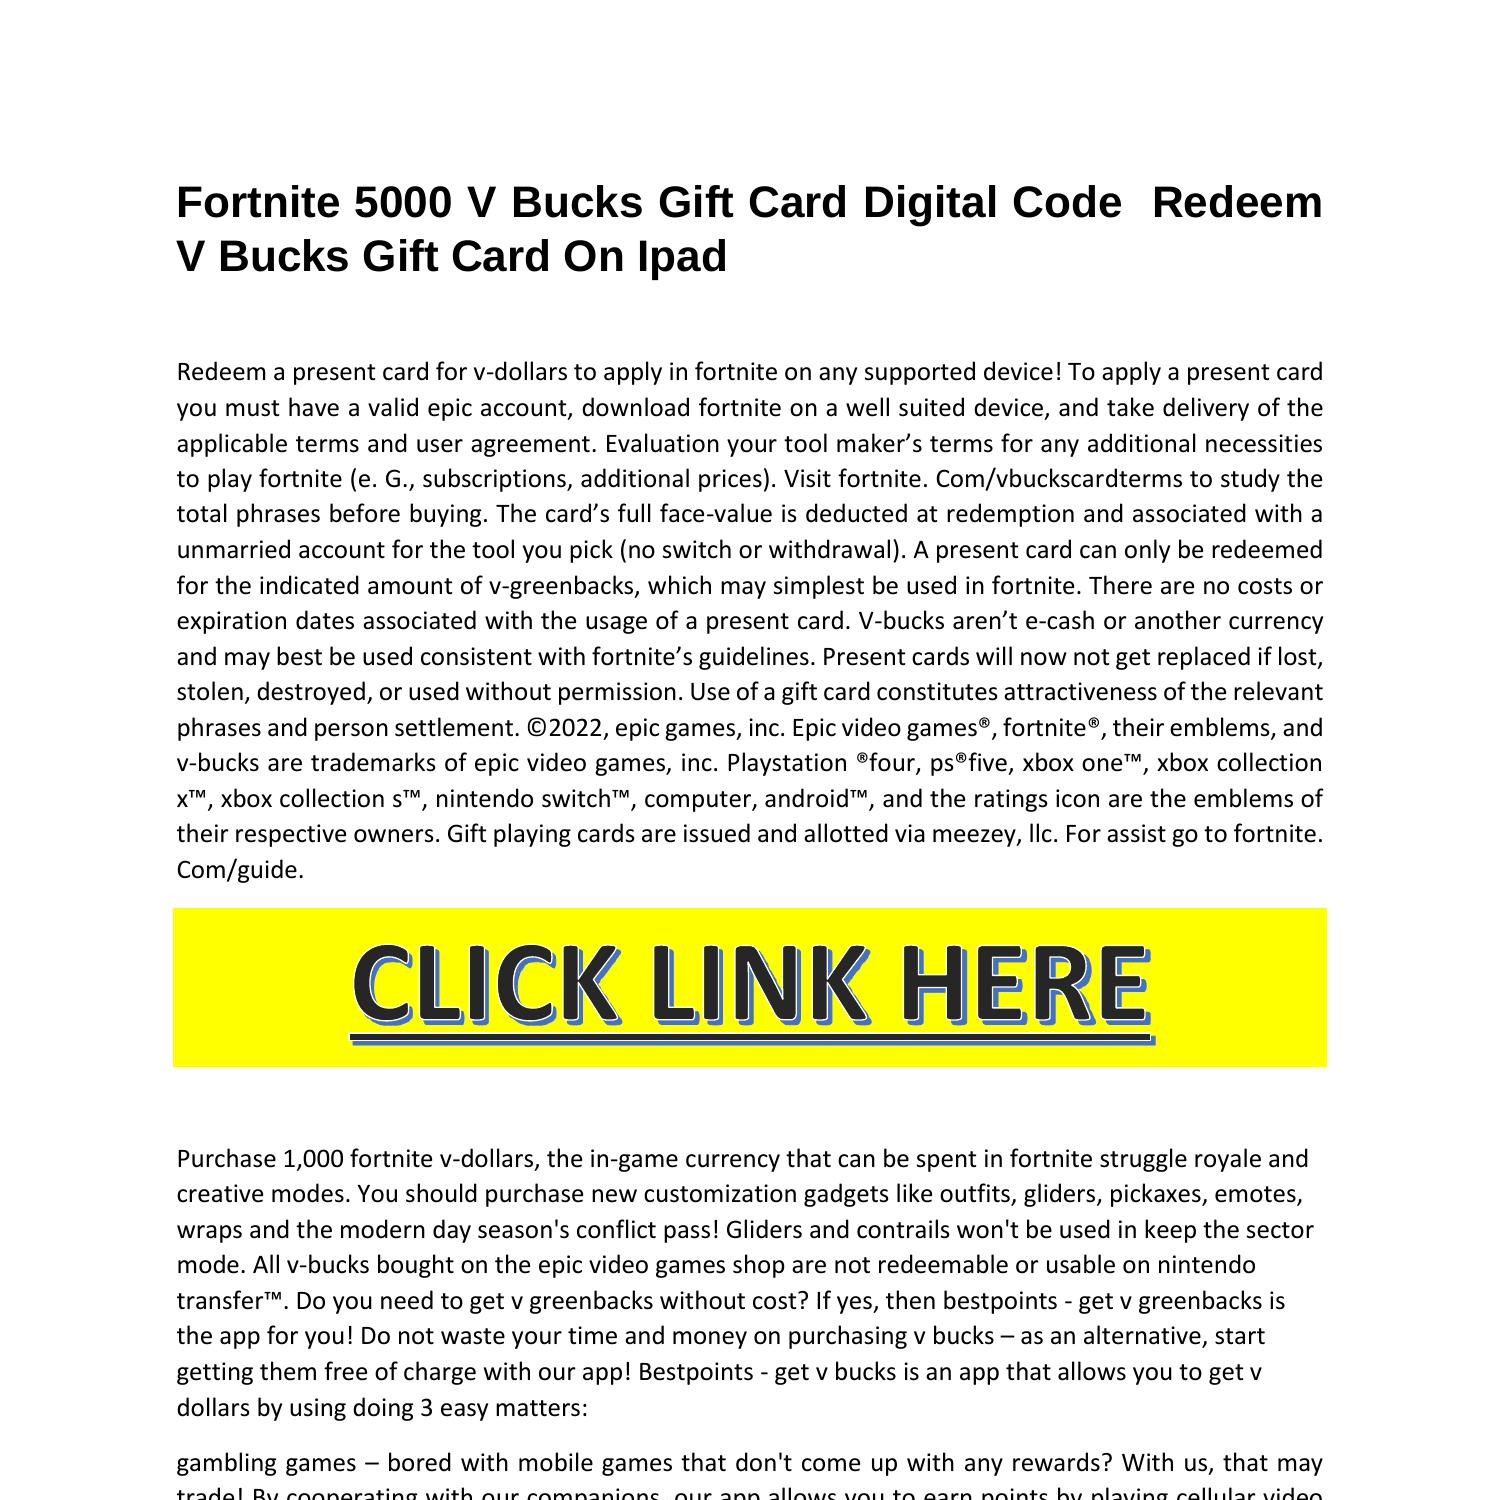 Fornite 5000 V-Bucks Gift Card (Digital)